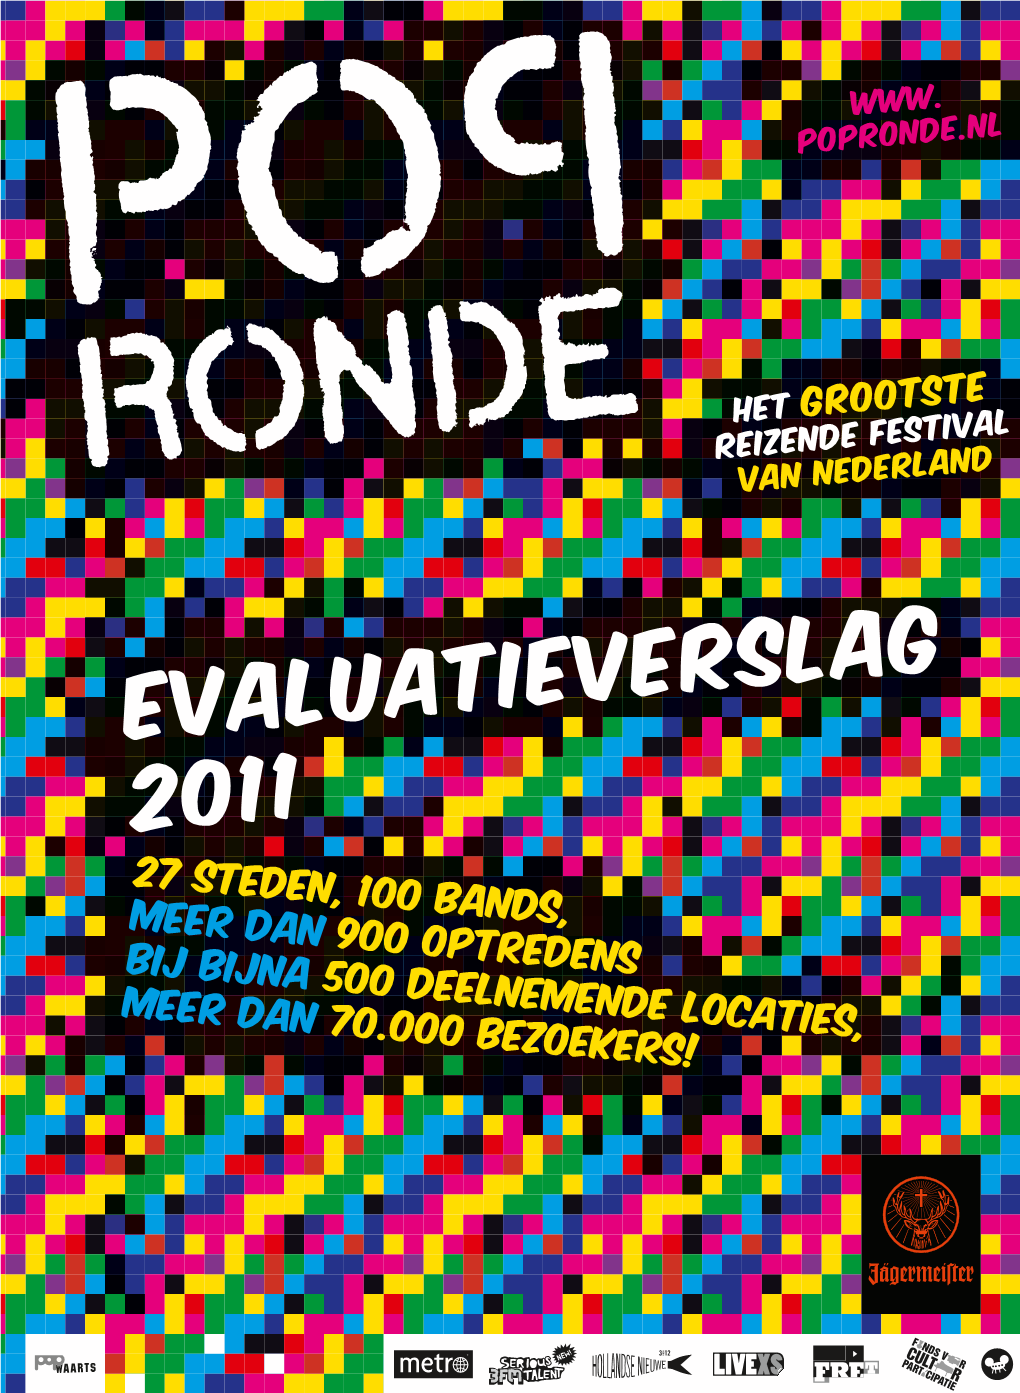 Het Complete Verslag Van De Popronde 2011